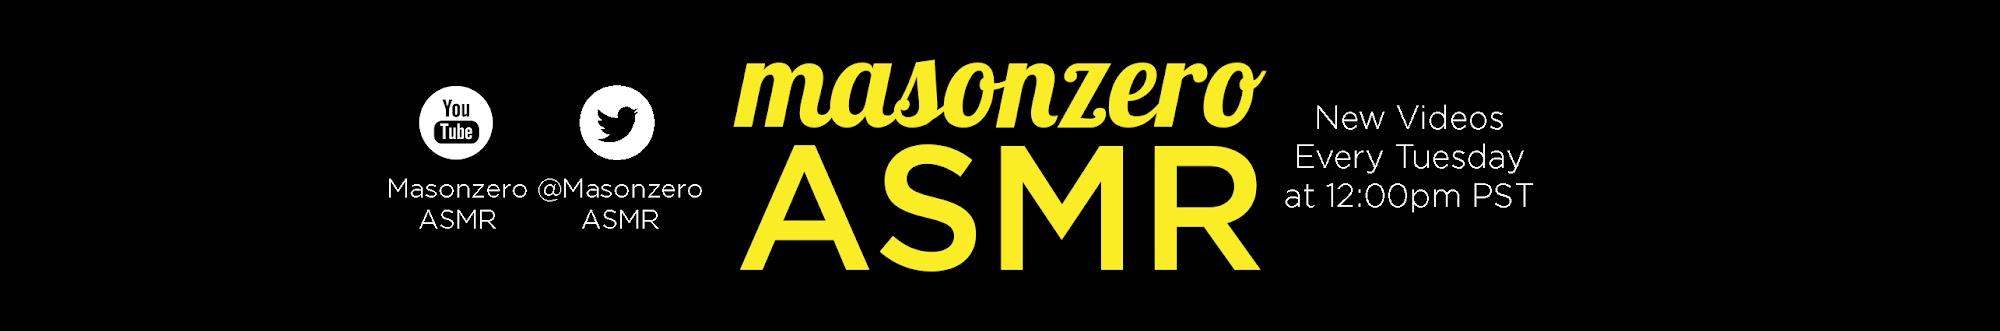 Masonzero ASMR